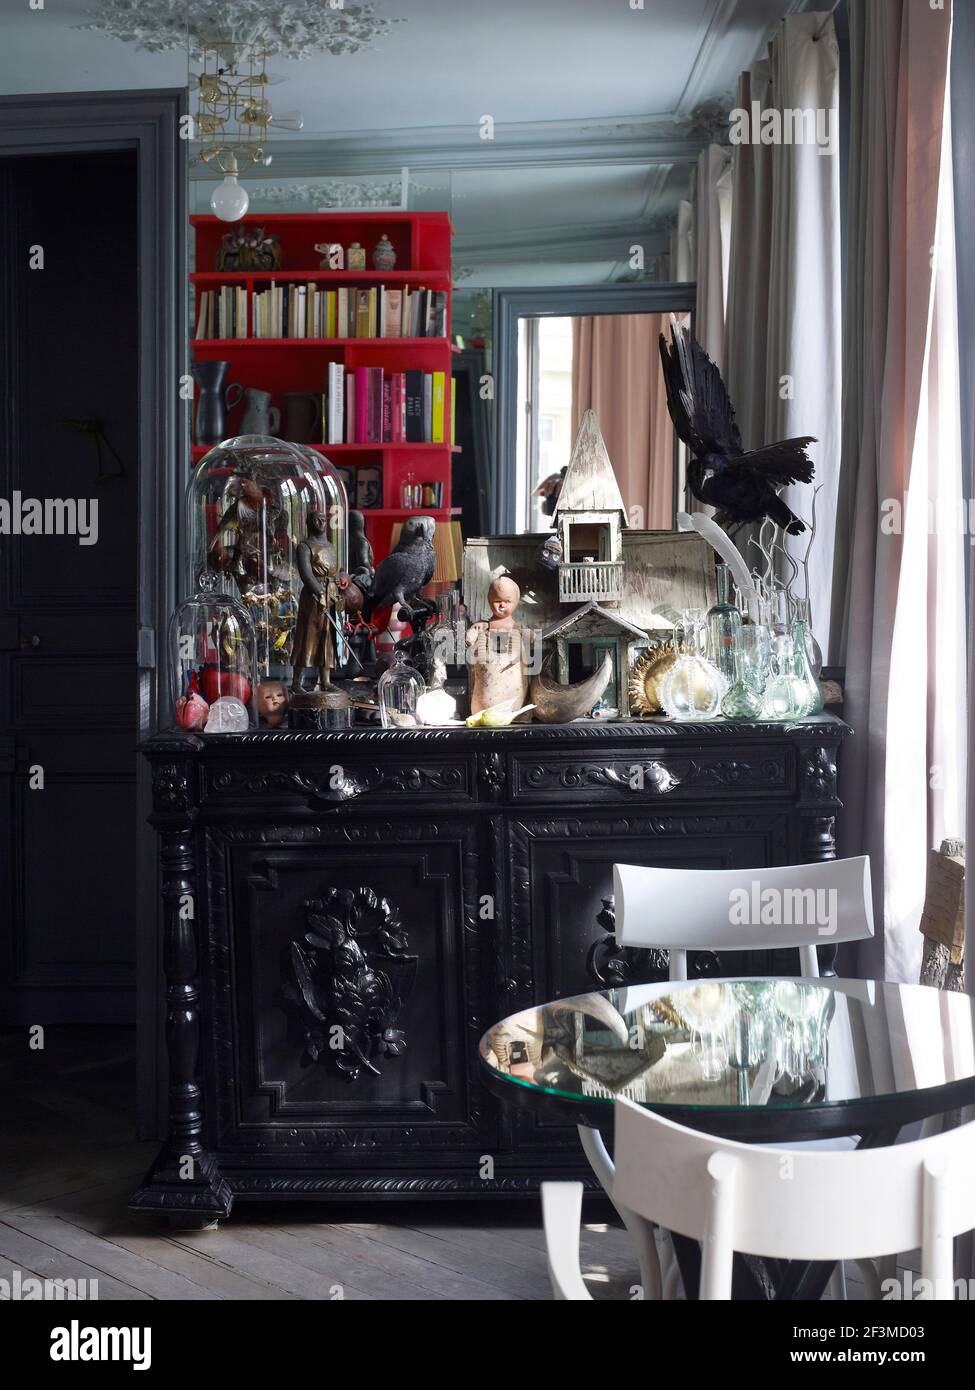 Kunstvolle schwarze Kommode mit einer Sammlung von Präparatoren und anderen  Kuriositäten und mit Spiegelung in Glastisch im Wohnhaus, Frankreich  Stockfotografie - Alamy